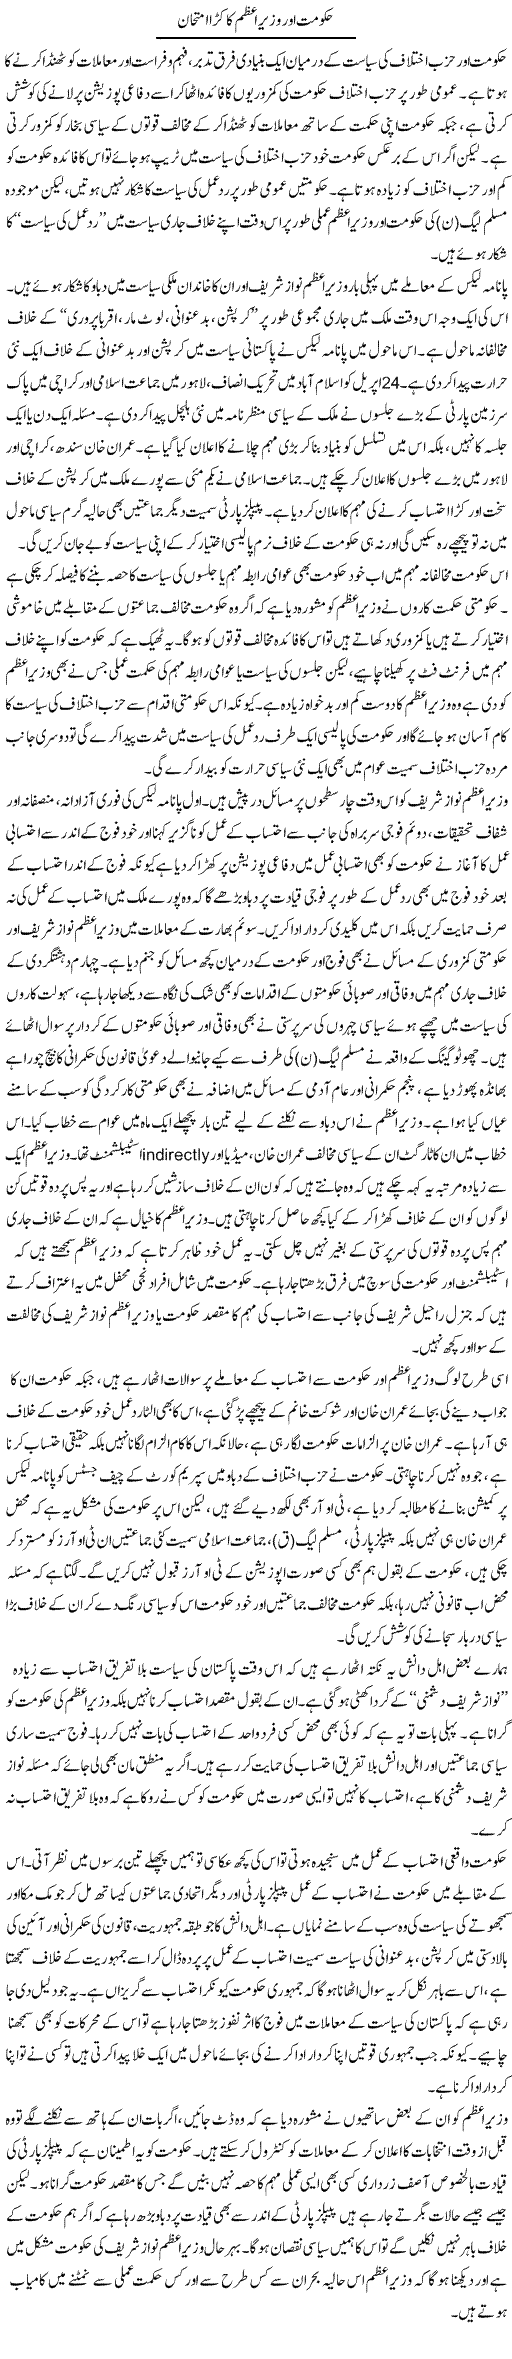 Hakumat Aor Wazir Azam Ka Kara Imtehan | Salman Abid | Daily Urdu Columns